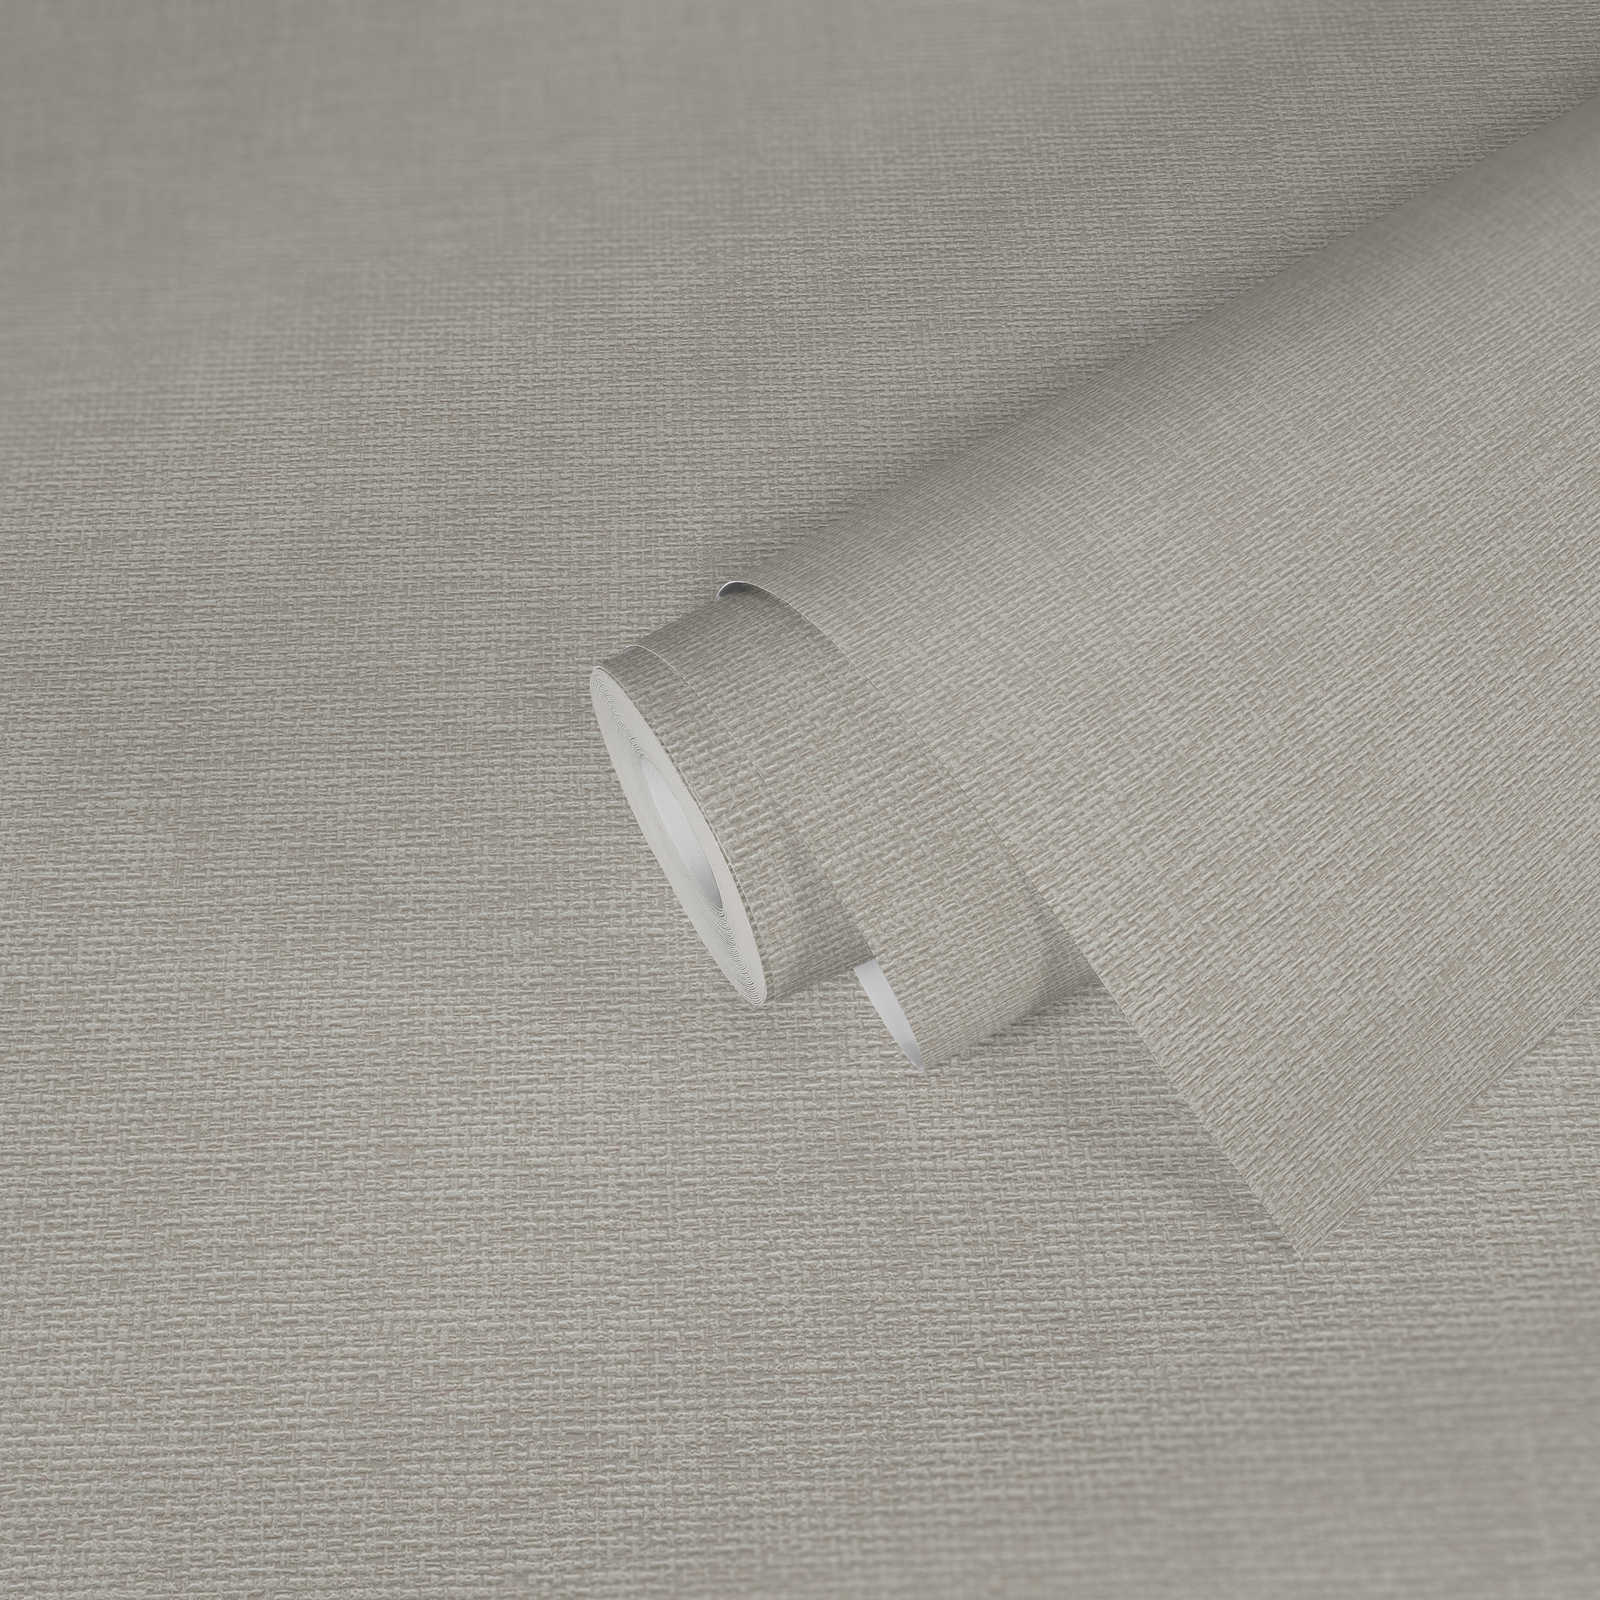             Textildesign Tapete mit Gewebestruktur – Grau
        